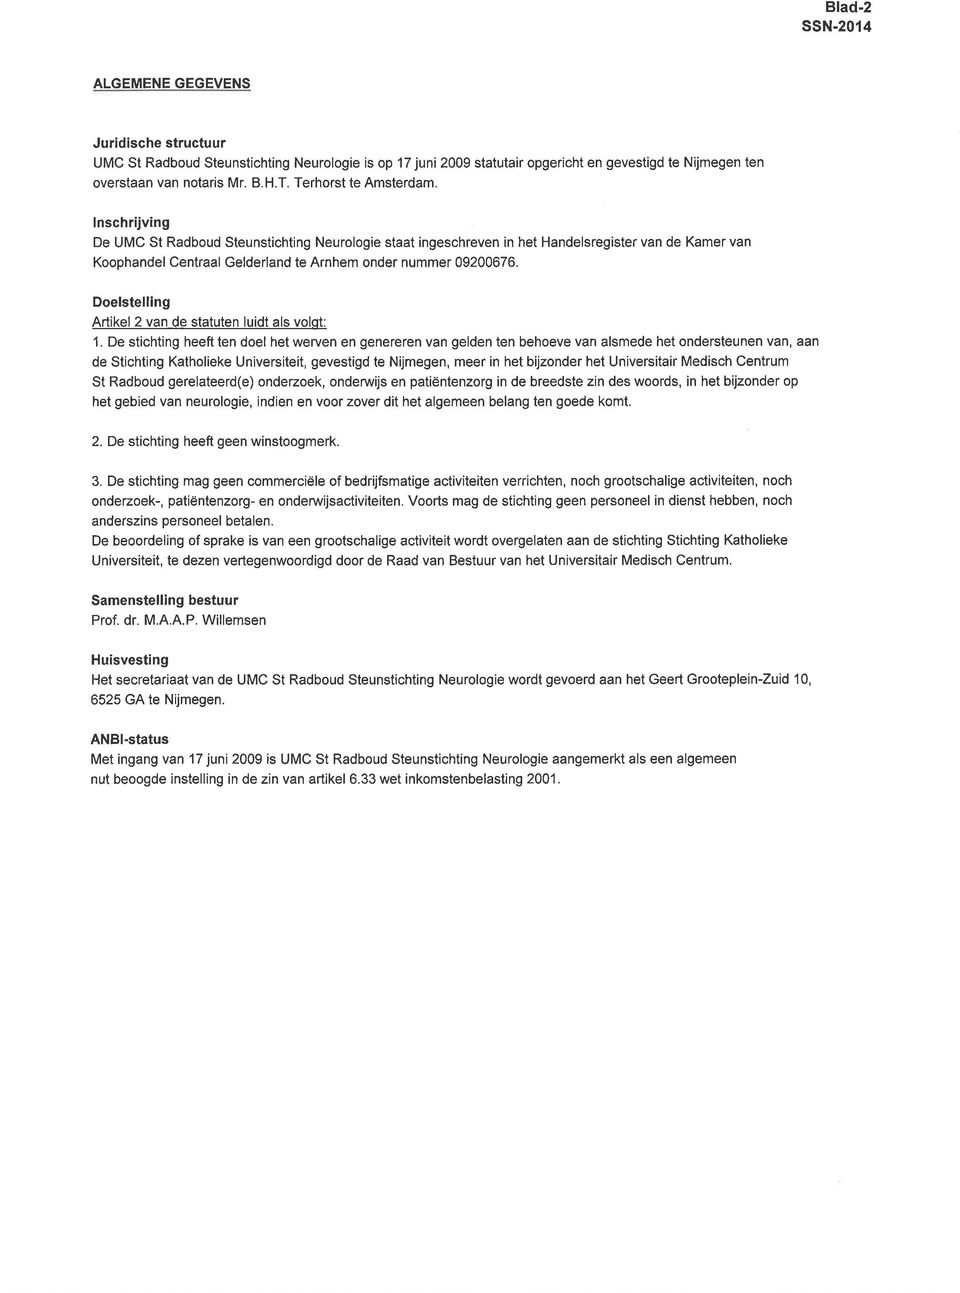 lnschrijving De UMC St Radboud Steunstichting Neurologie staat ingeschreven in het Handelsregister van de Kamer van Koophandel Centraal Gelderland te Arnhem onder nummer 09200676.